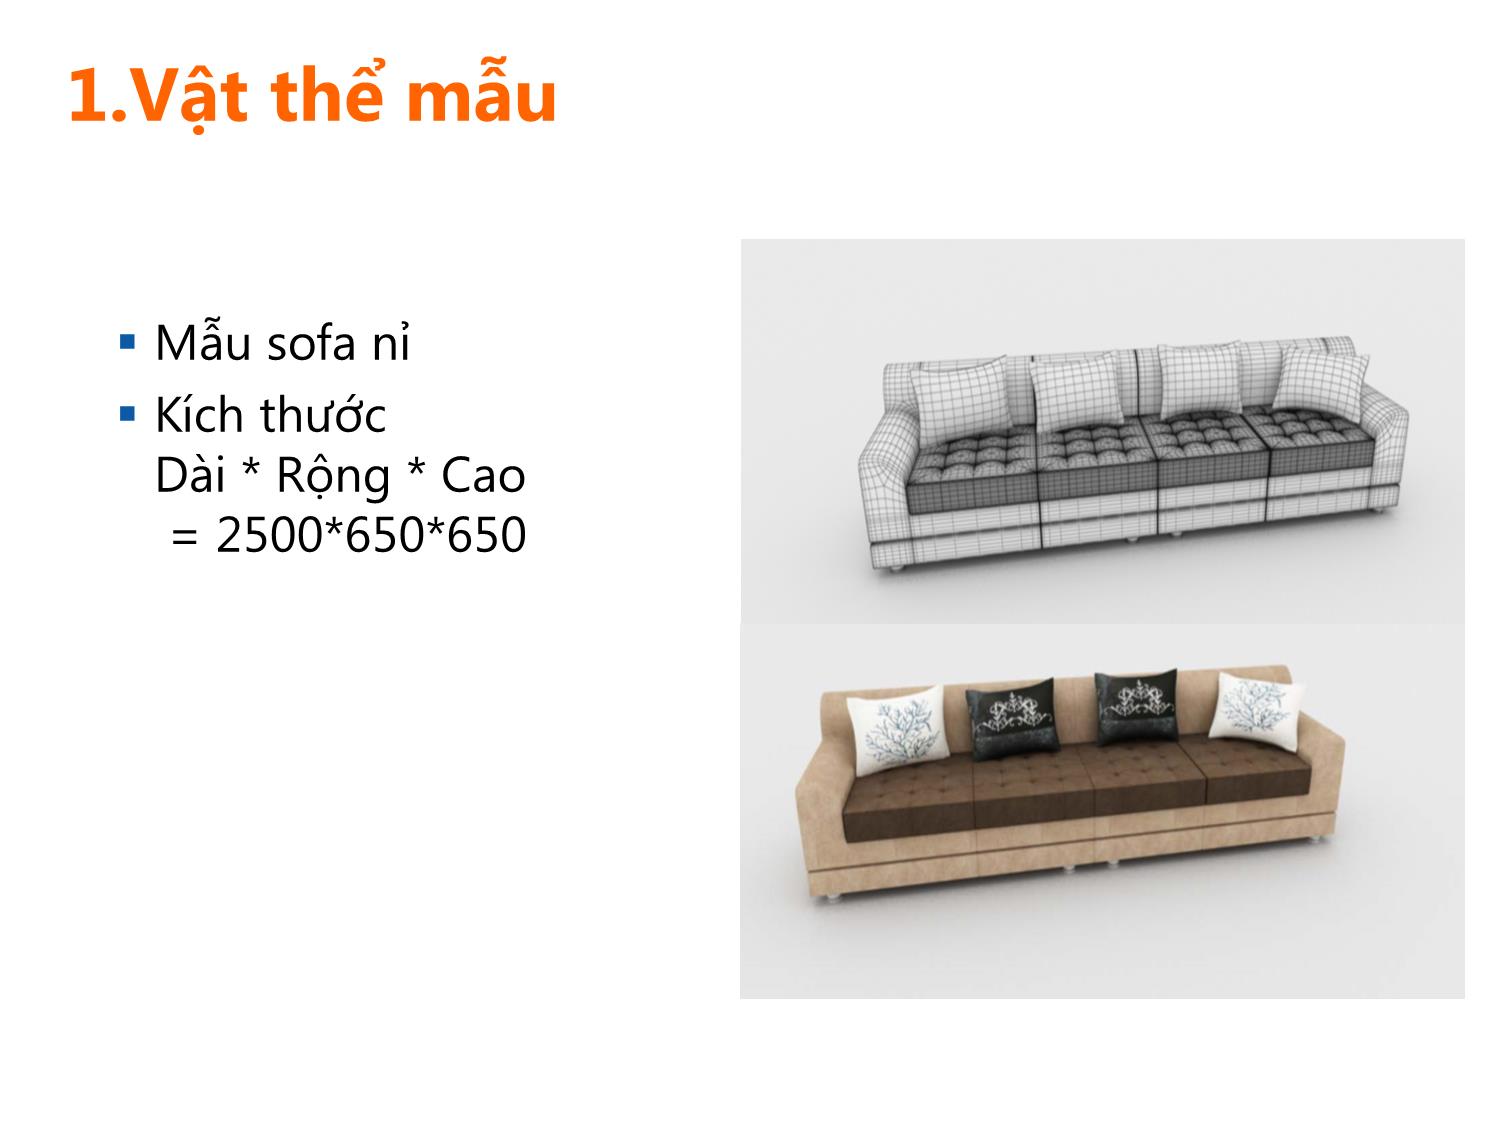 Bài giảng Thiết kế phối cảnh 3D - Bài 2: Modeling a sofa. Dựng hình một bộ sofa trang 3